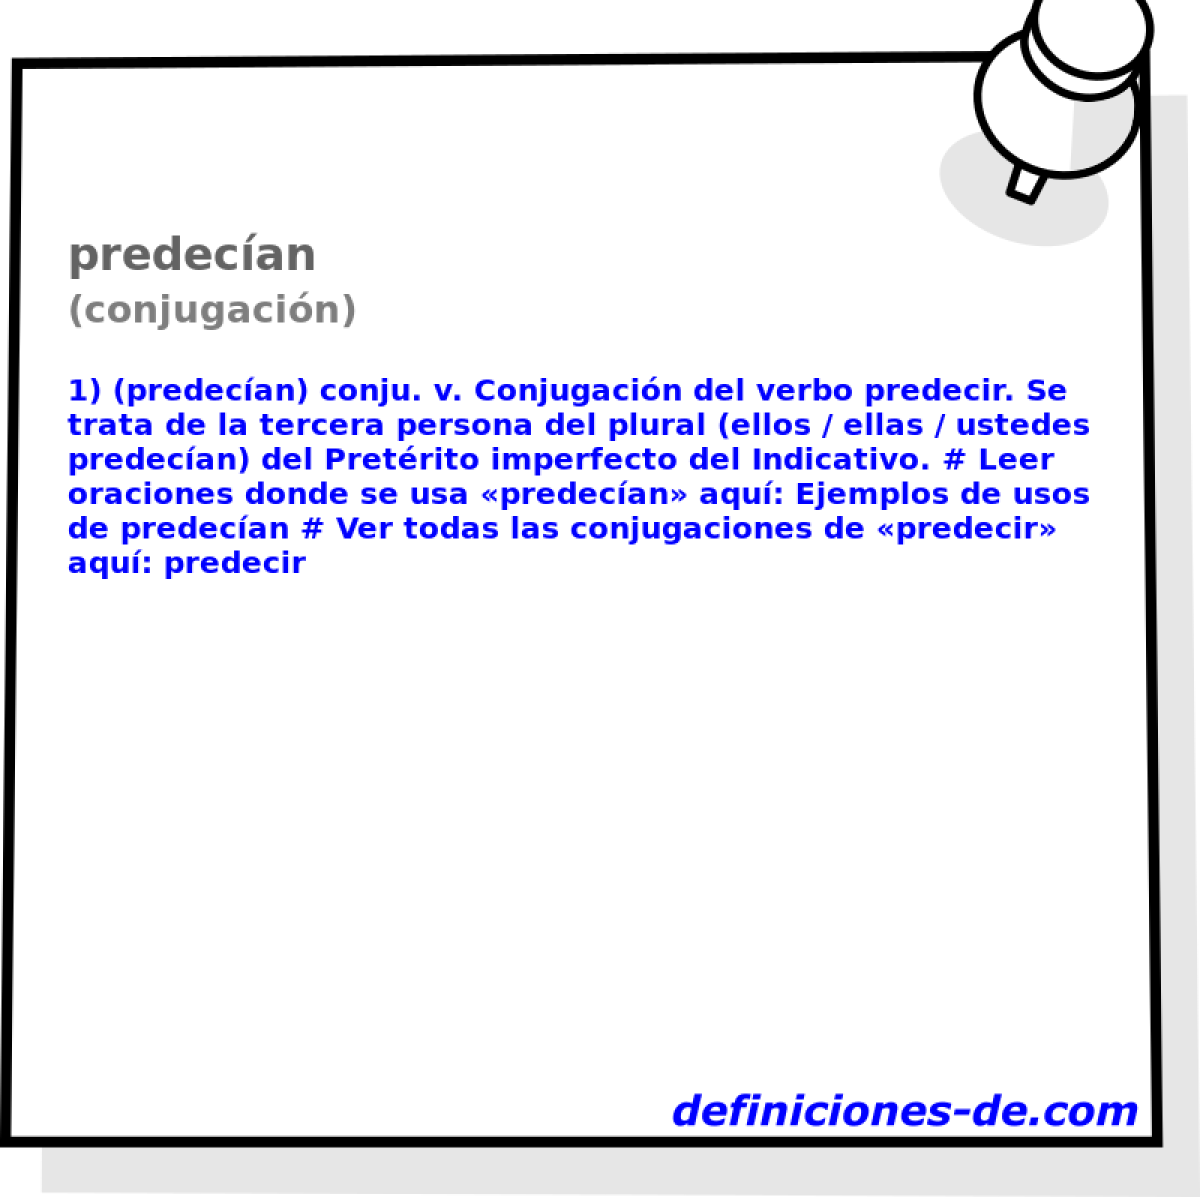 predecan (conjugacin)